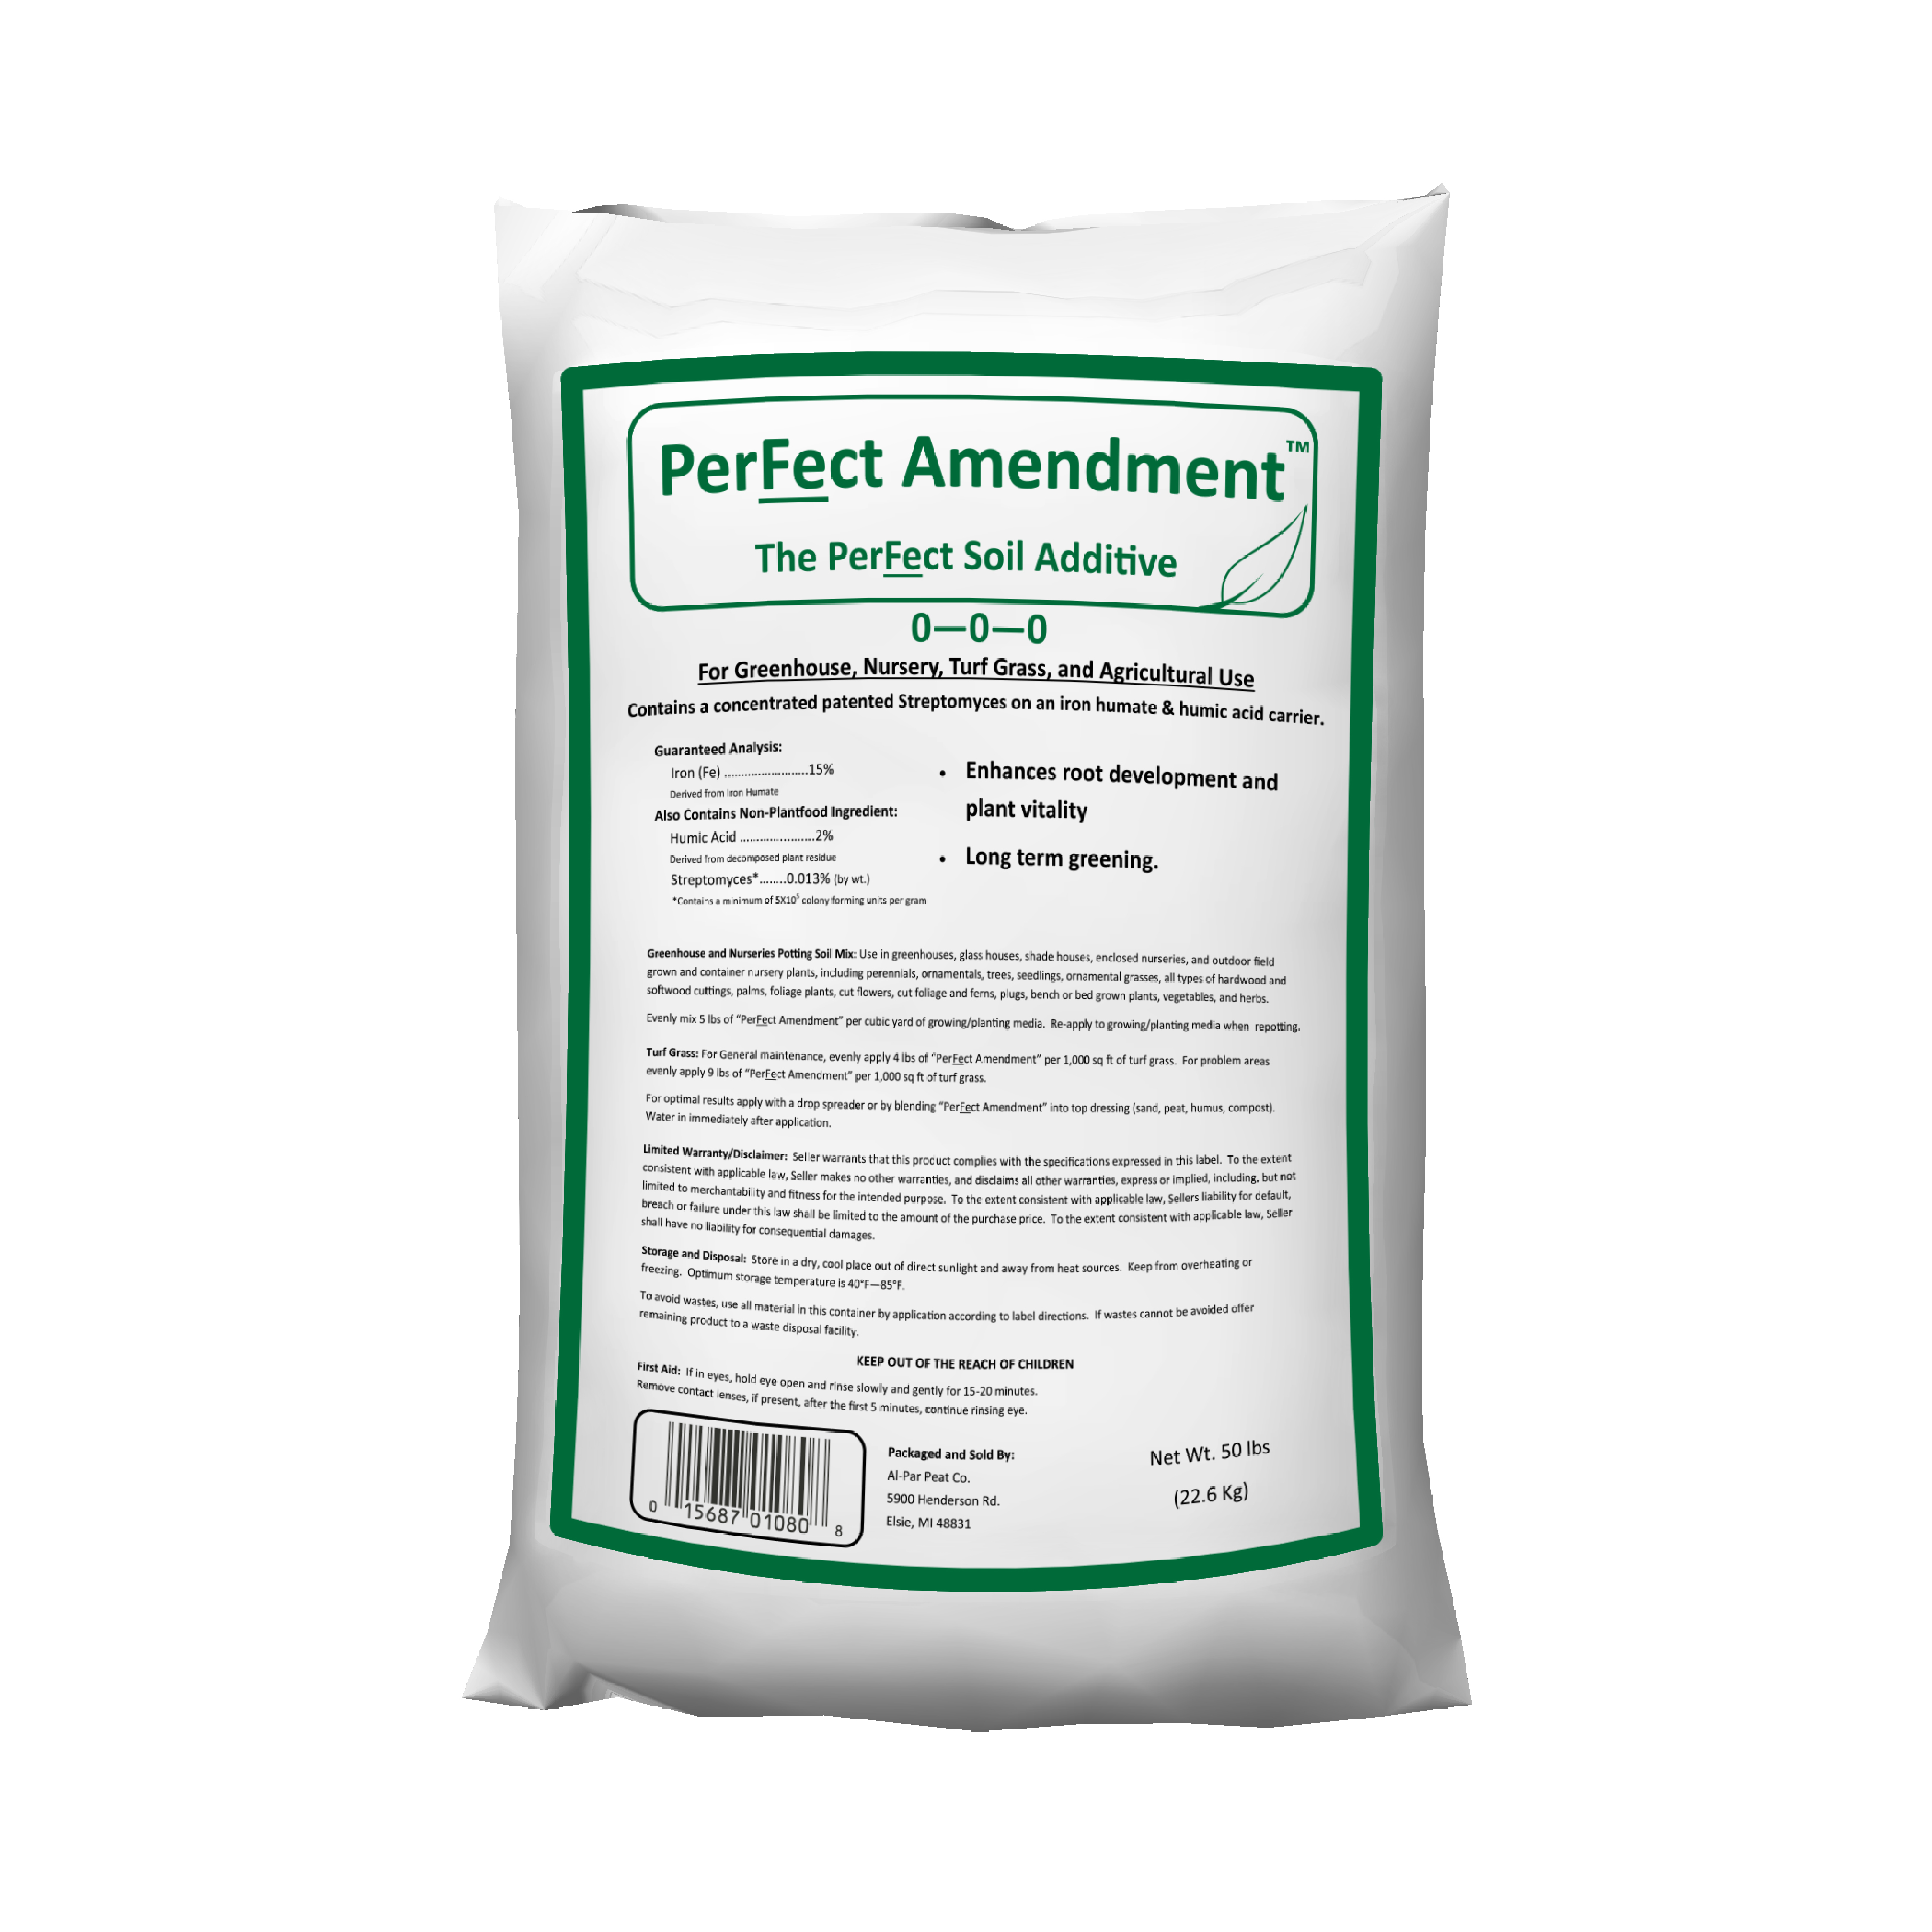 PerFect Amendment Soil Additive 50 lb Bag - Fungicides